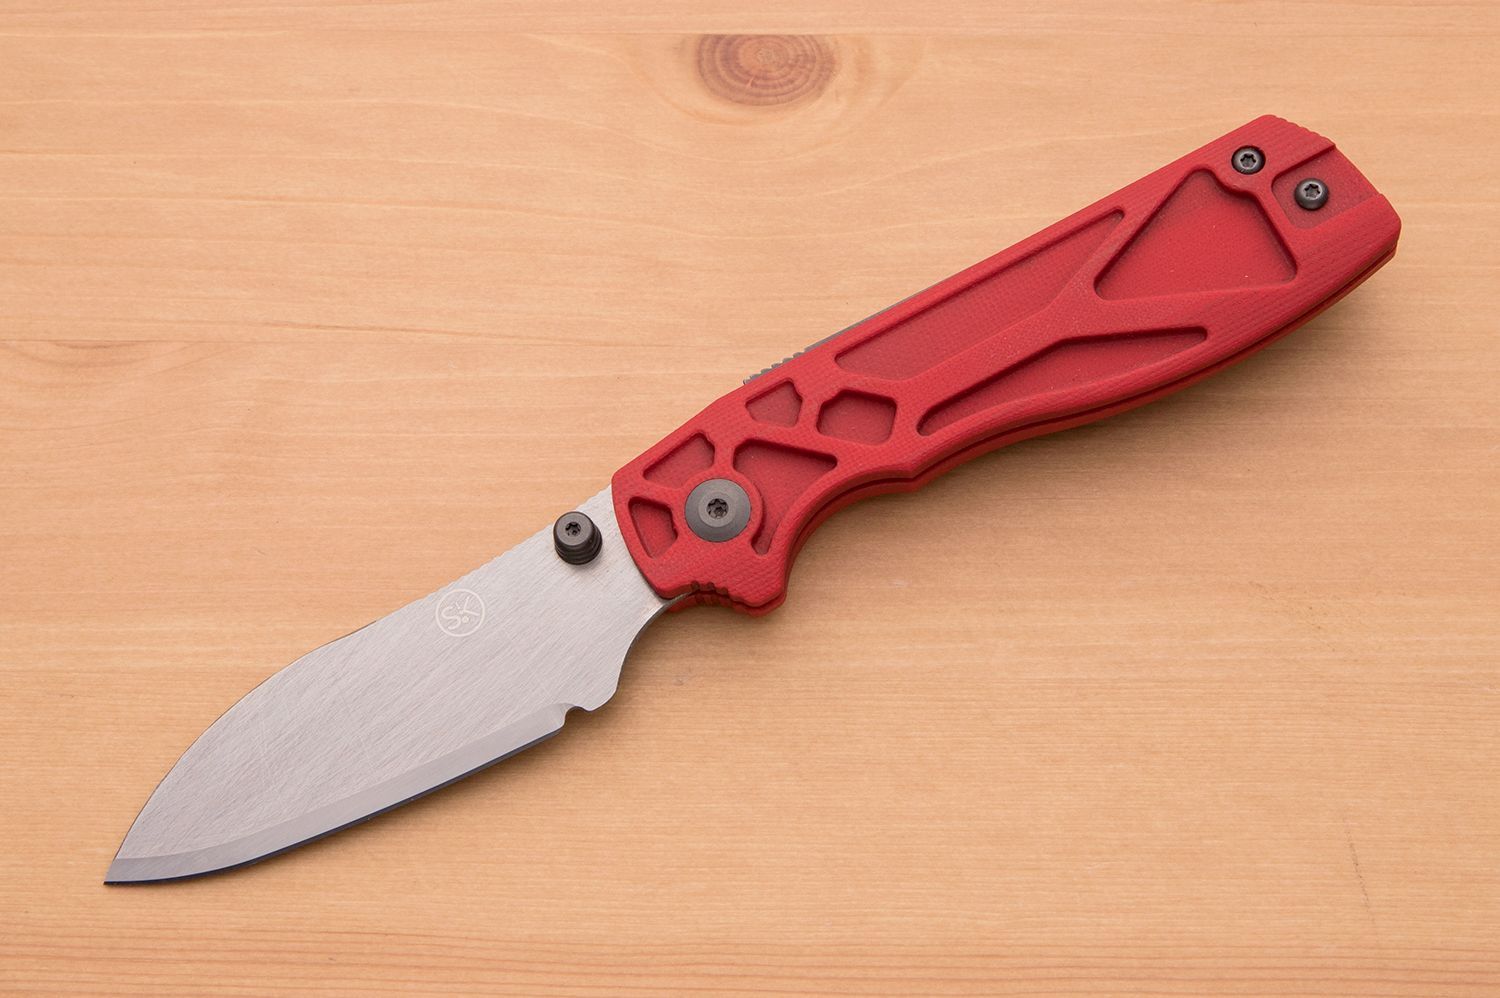 The Lanzo Sheepfoot Tungsten Carbide Knife- Sandrin Knives USA